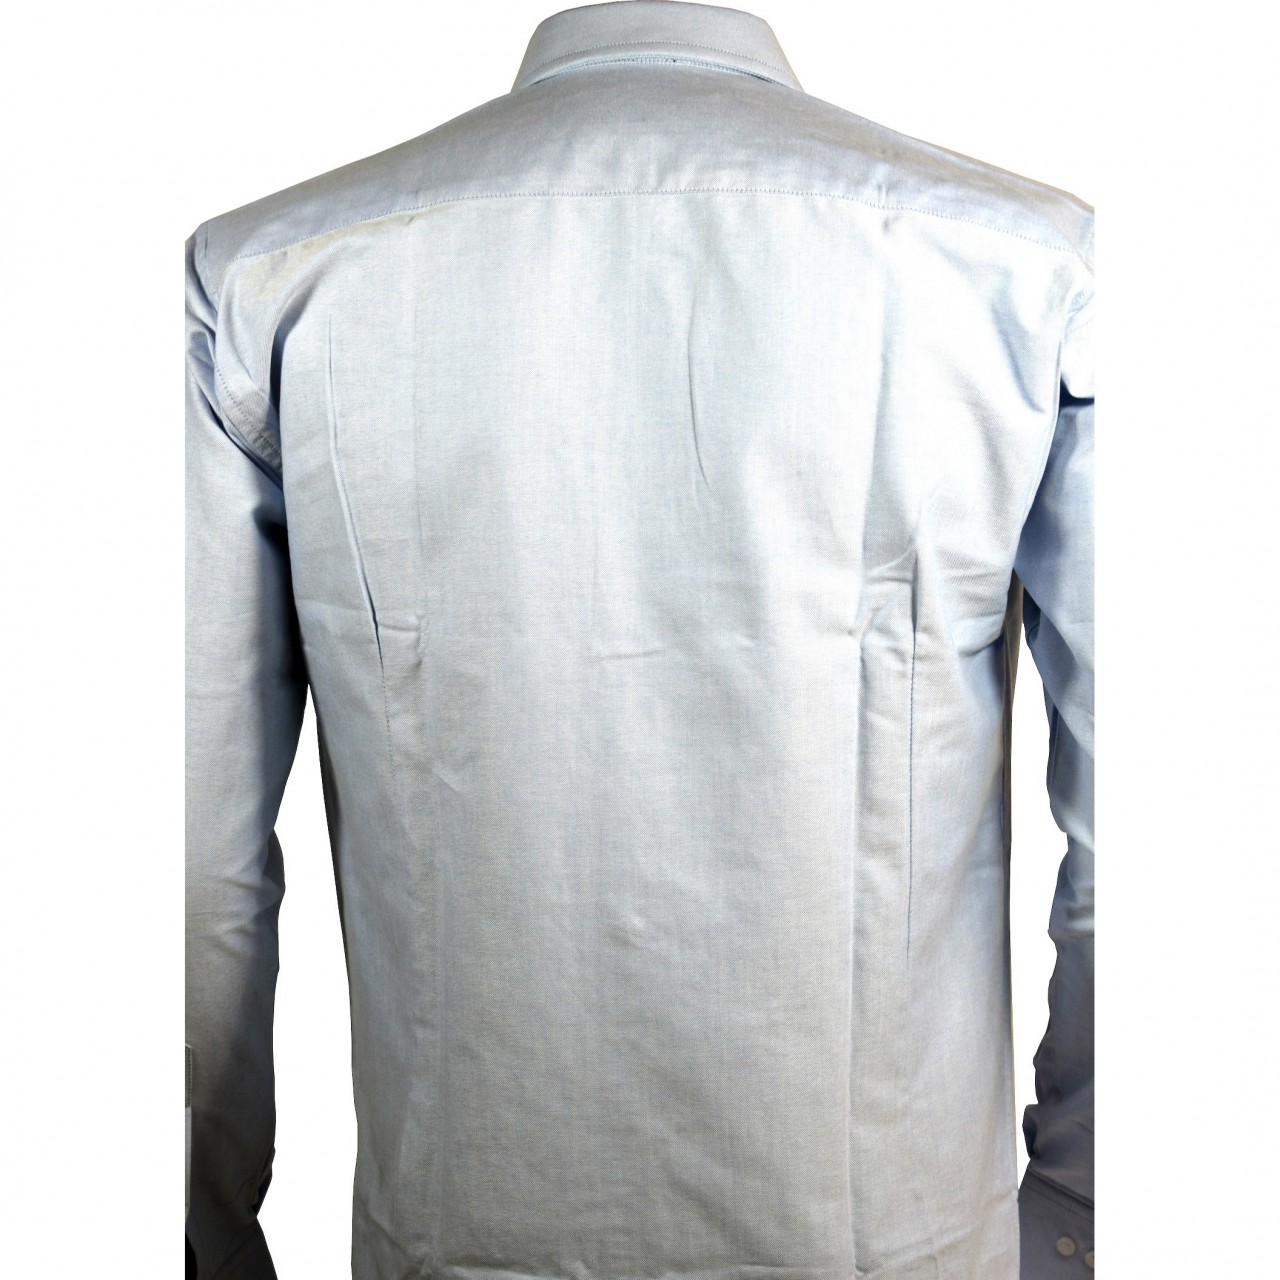 Slim Fitting Shirt for Men in Sky Blue & Plain Black Cotton